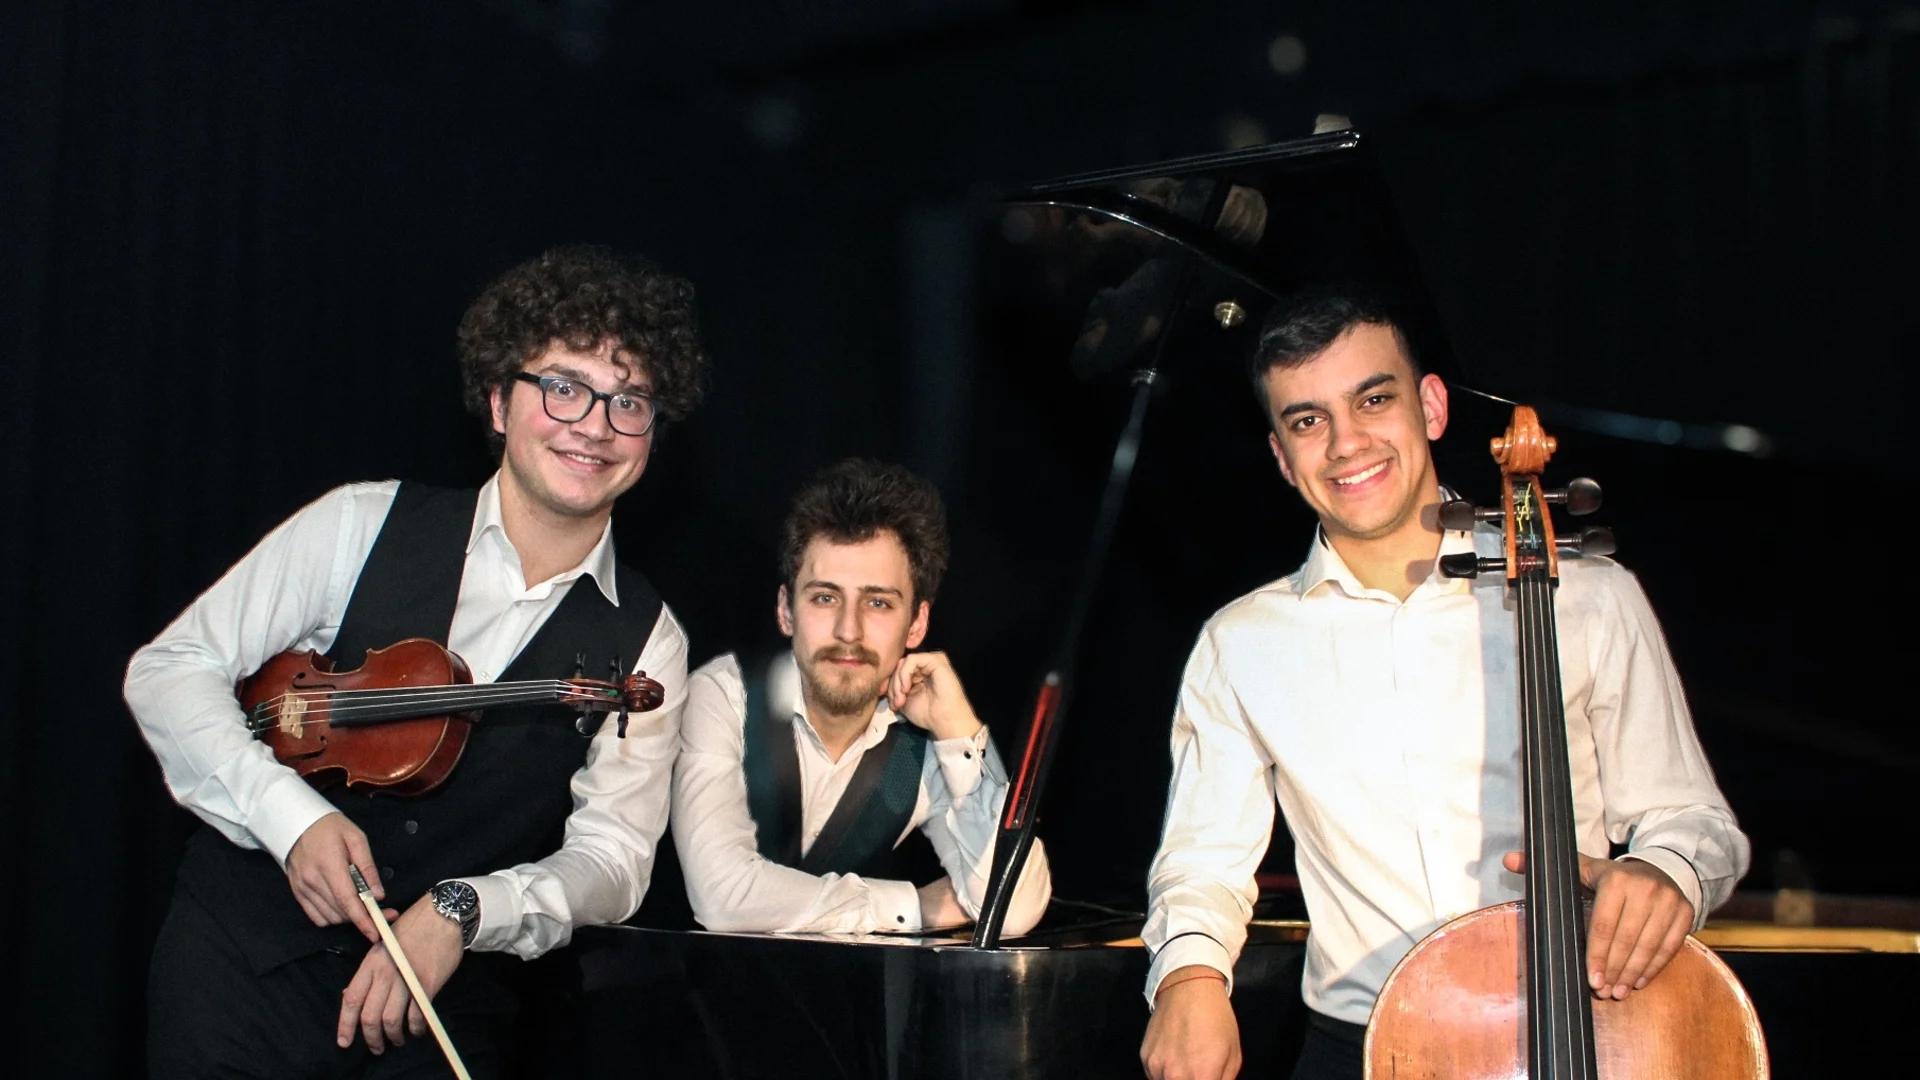 Младите музиканти от трио "ASSAI" свирят творби от Сметана и Дворжак на 27 февруари